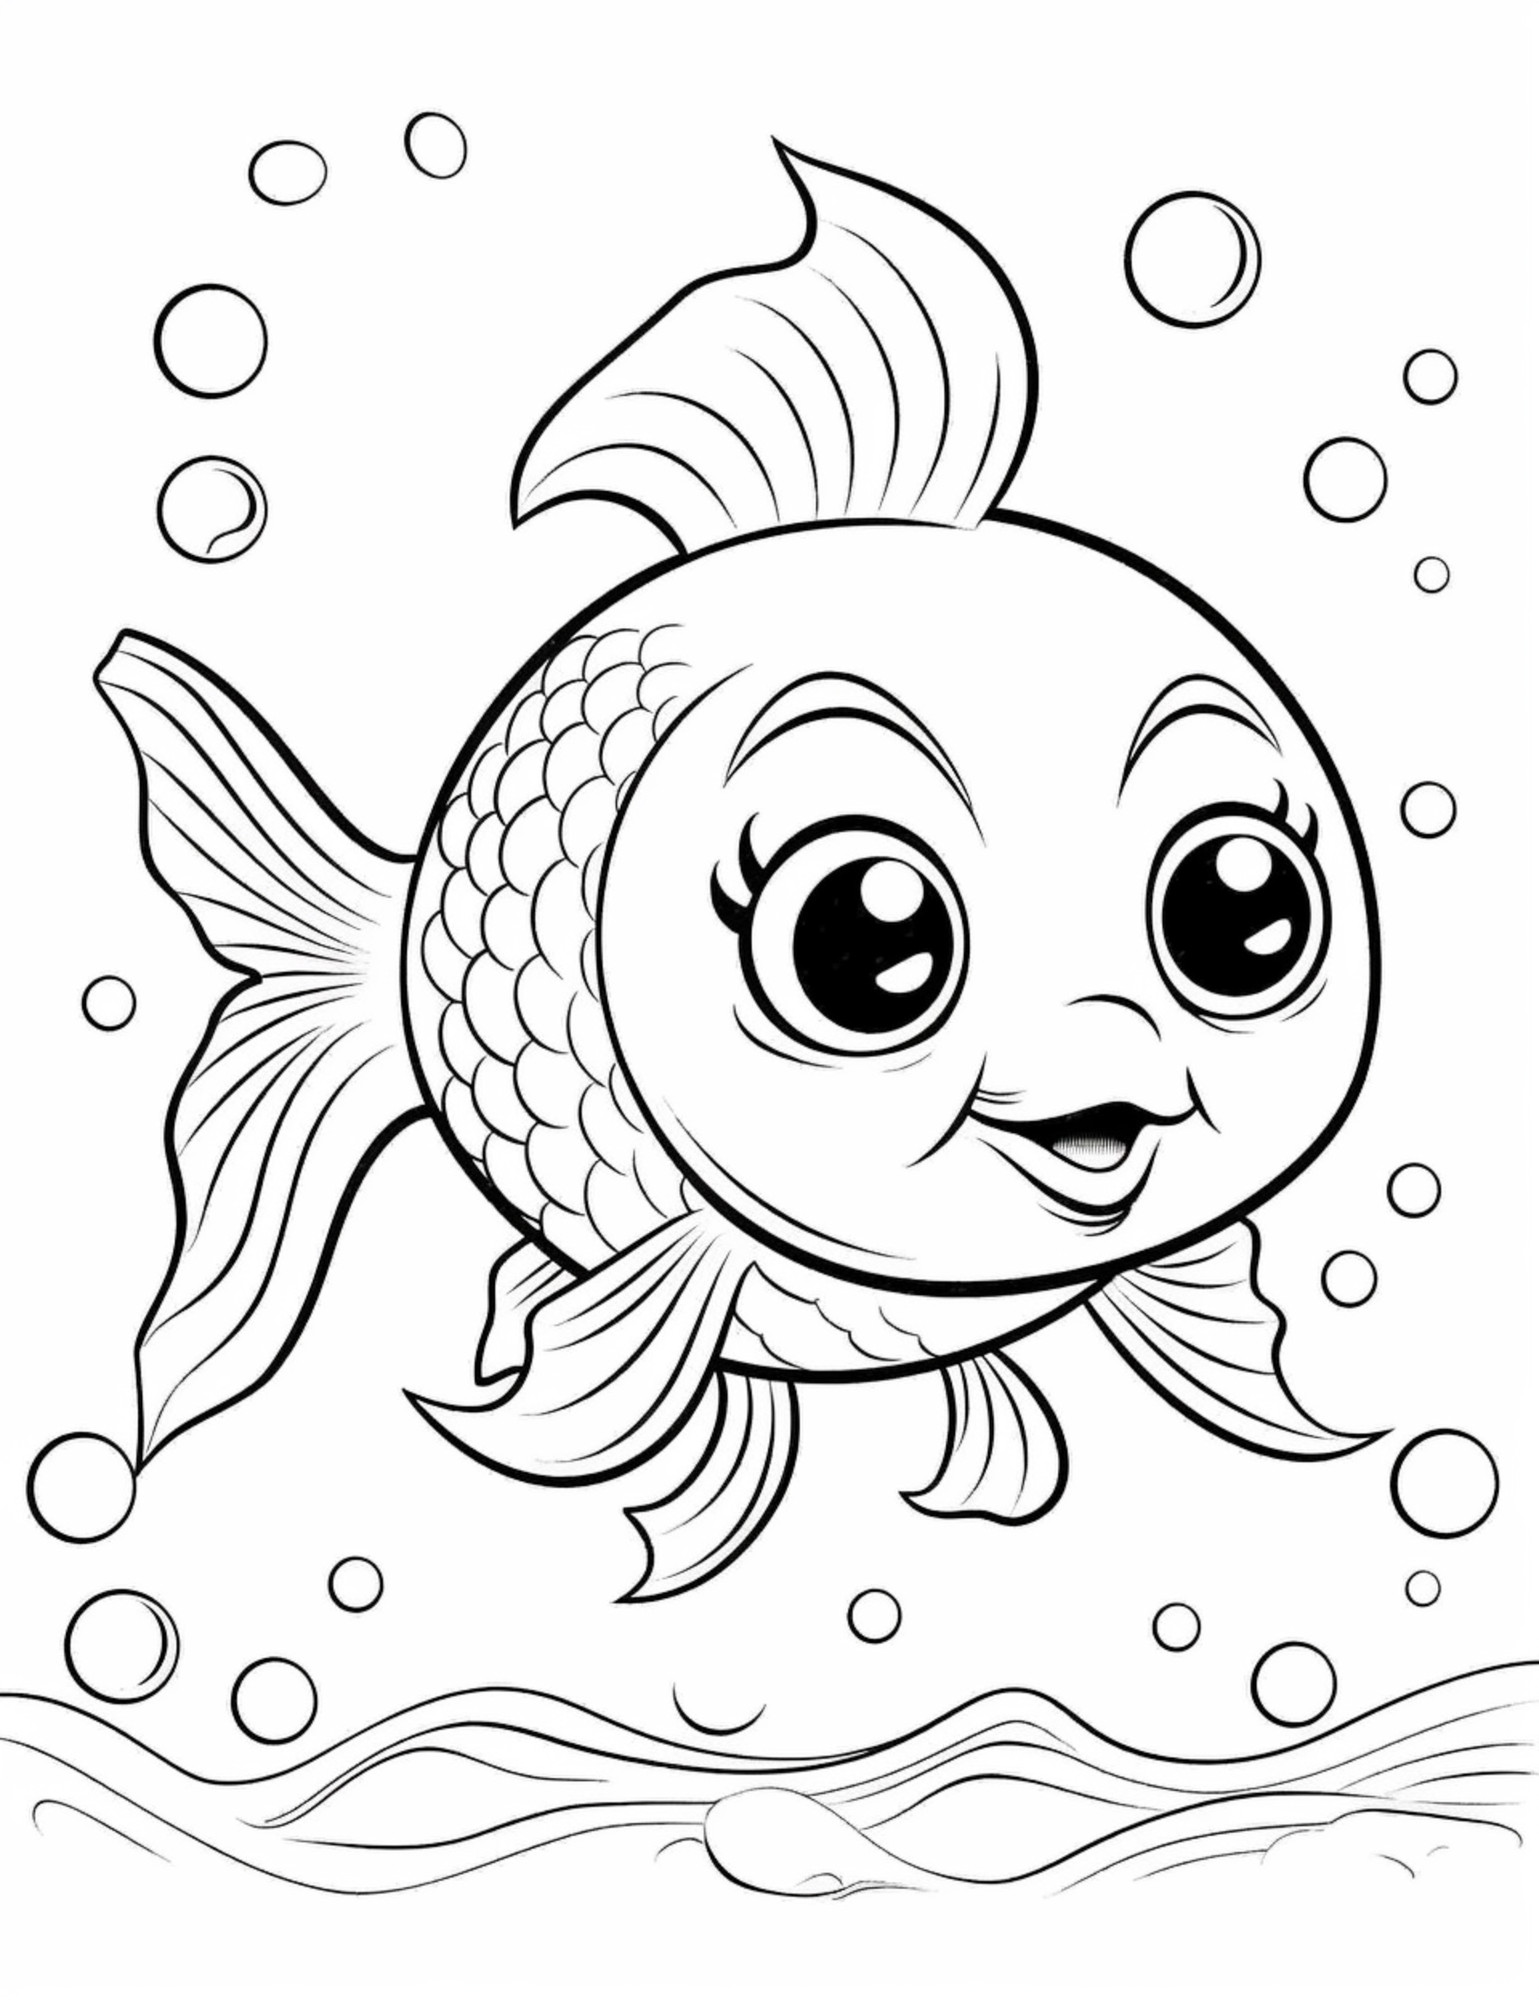 Раскраска для детей: рыба с лицом и пузырьками воздуха